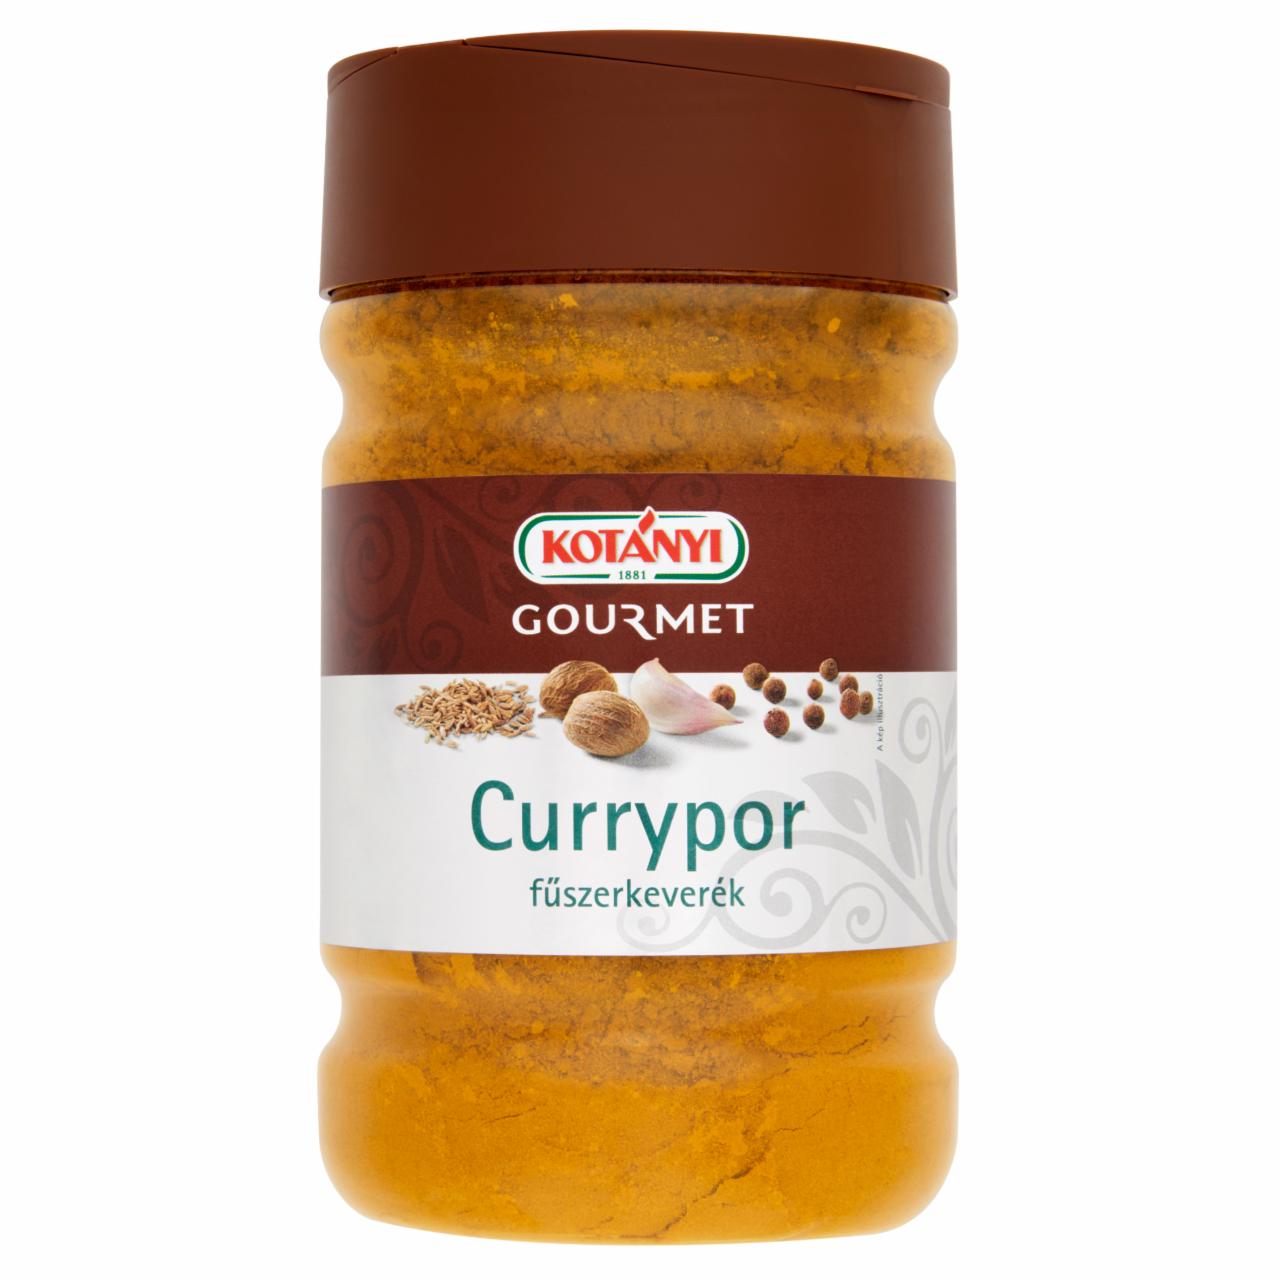 Képek - Kotányi Gourmet currypor fűszerkeverék 590 g